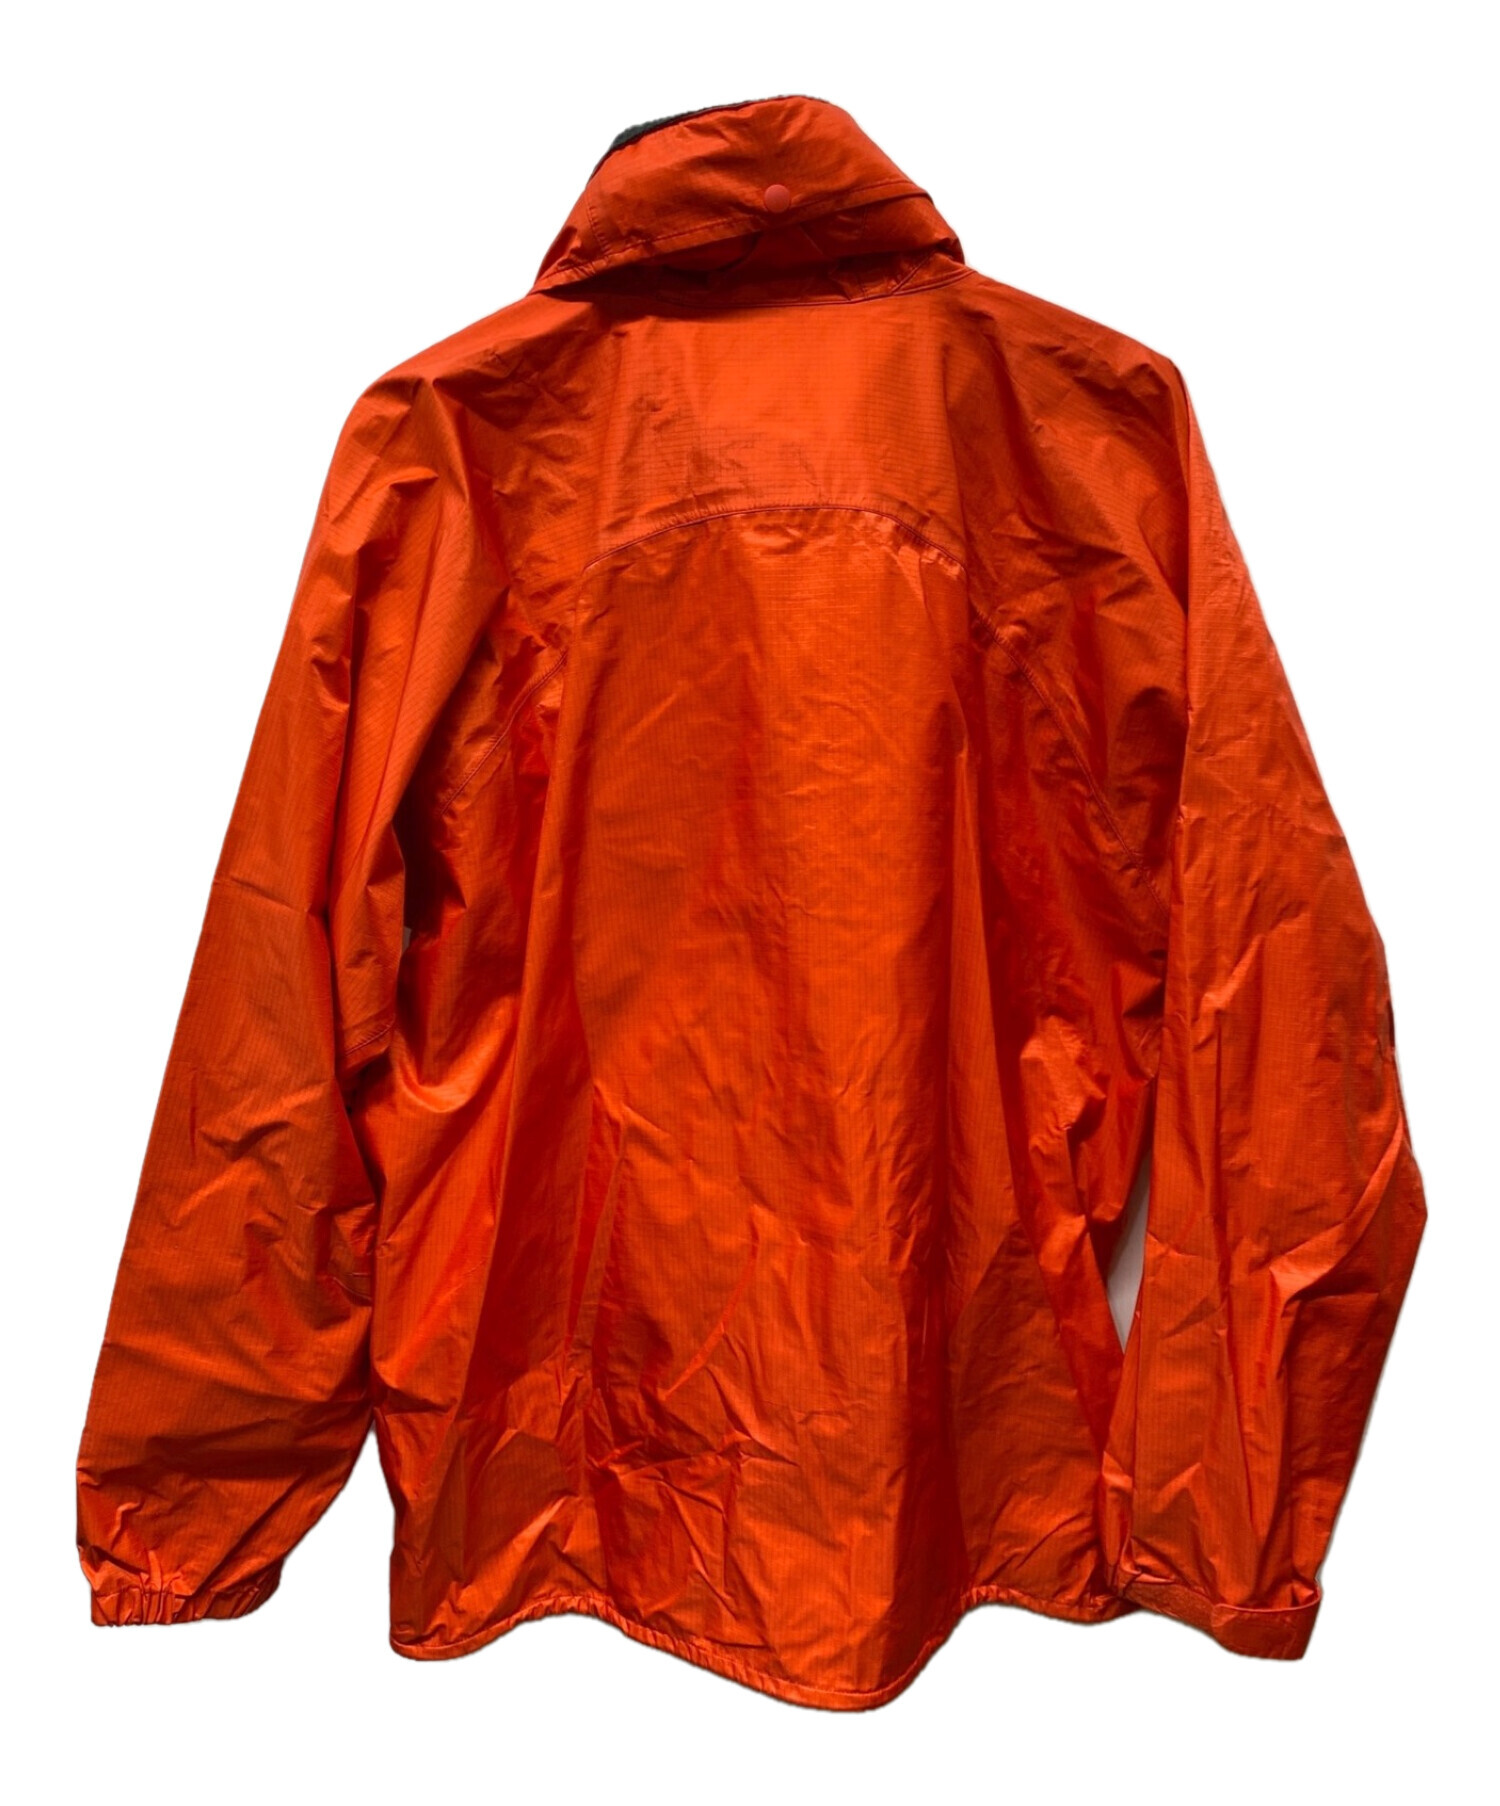 mont-bell (モンベル) ストームクルーザージャケット オレンジ サイズ:M